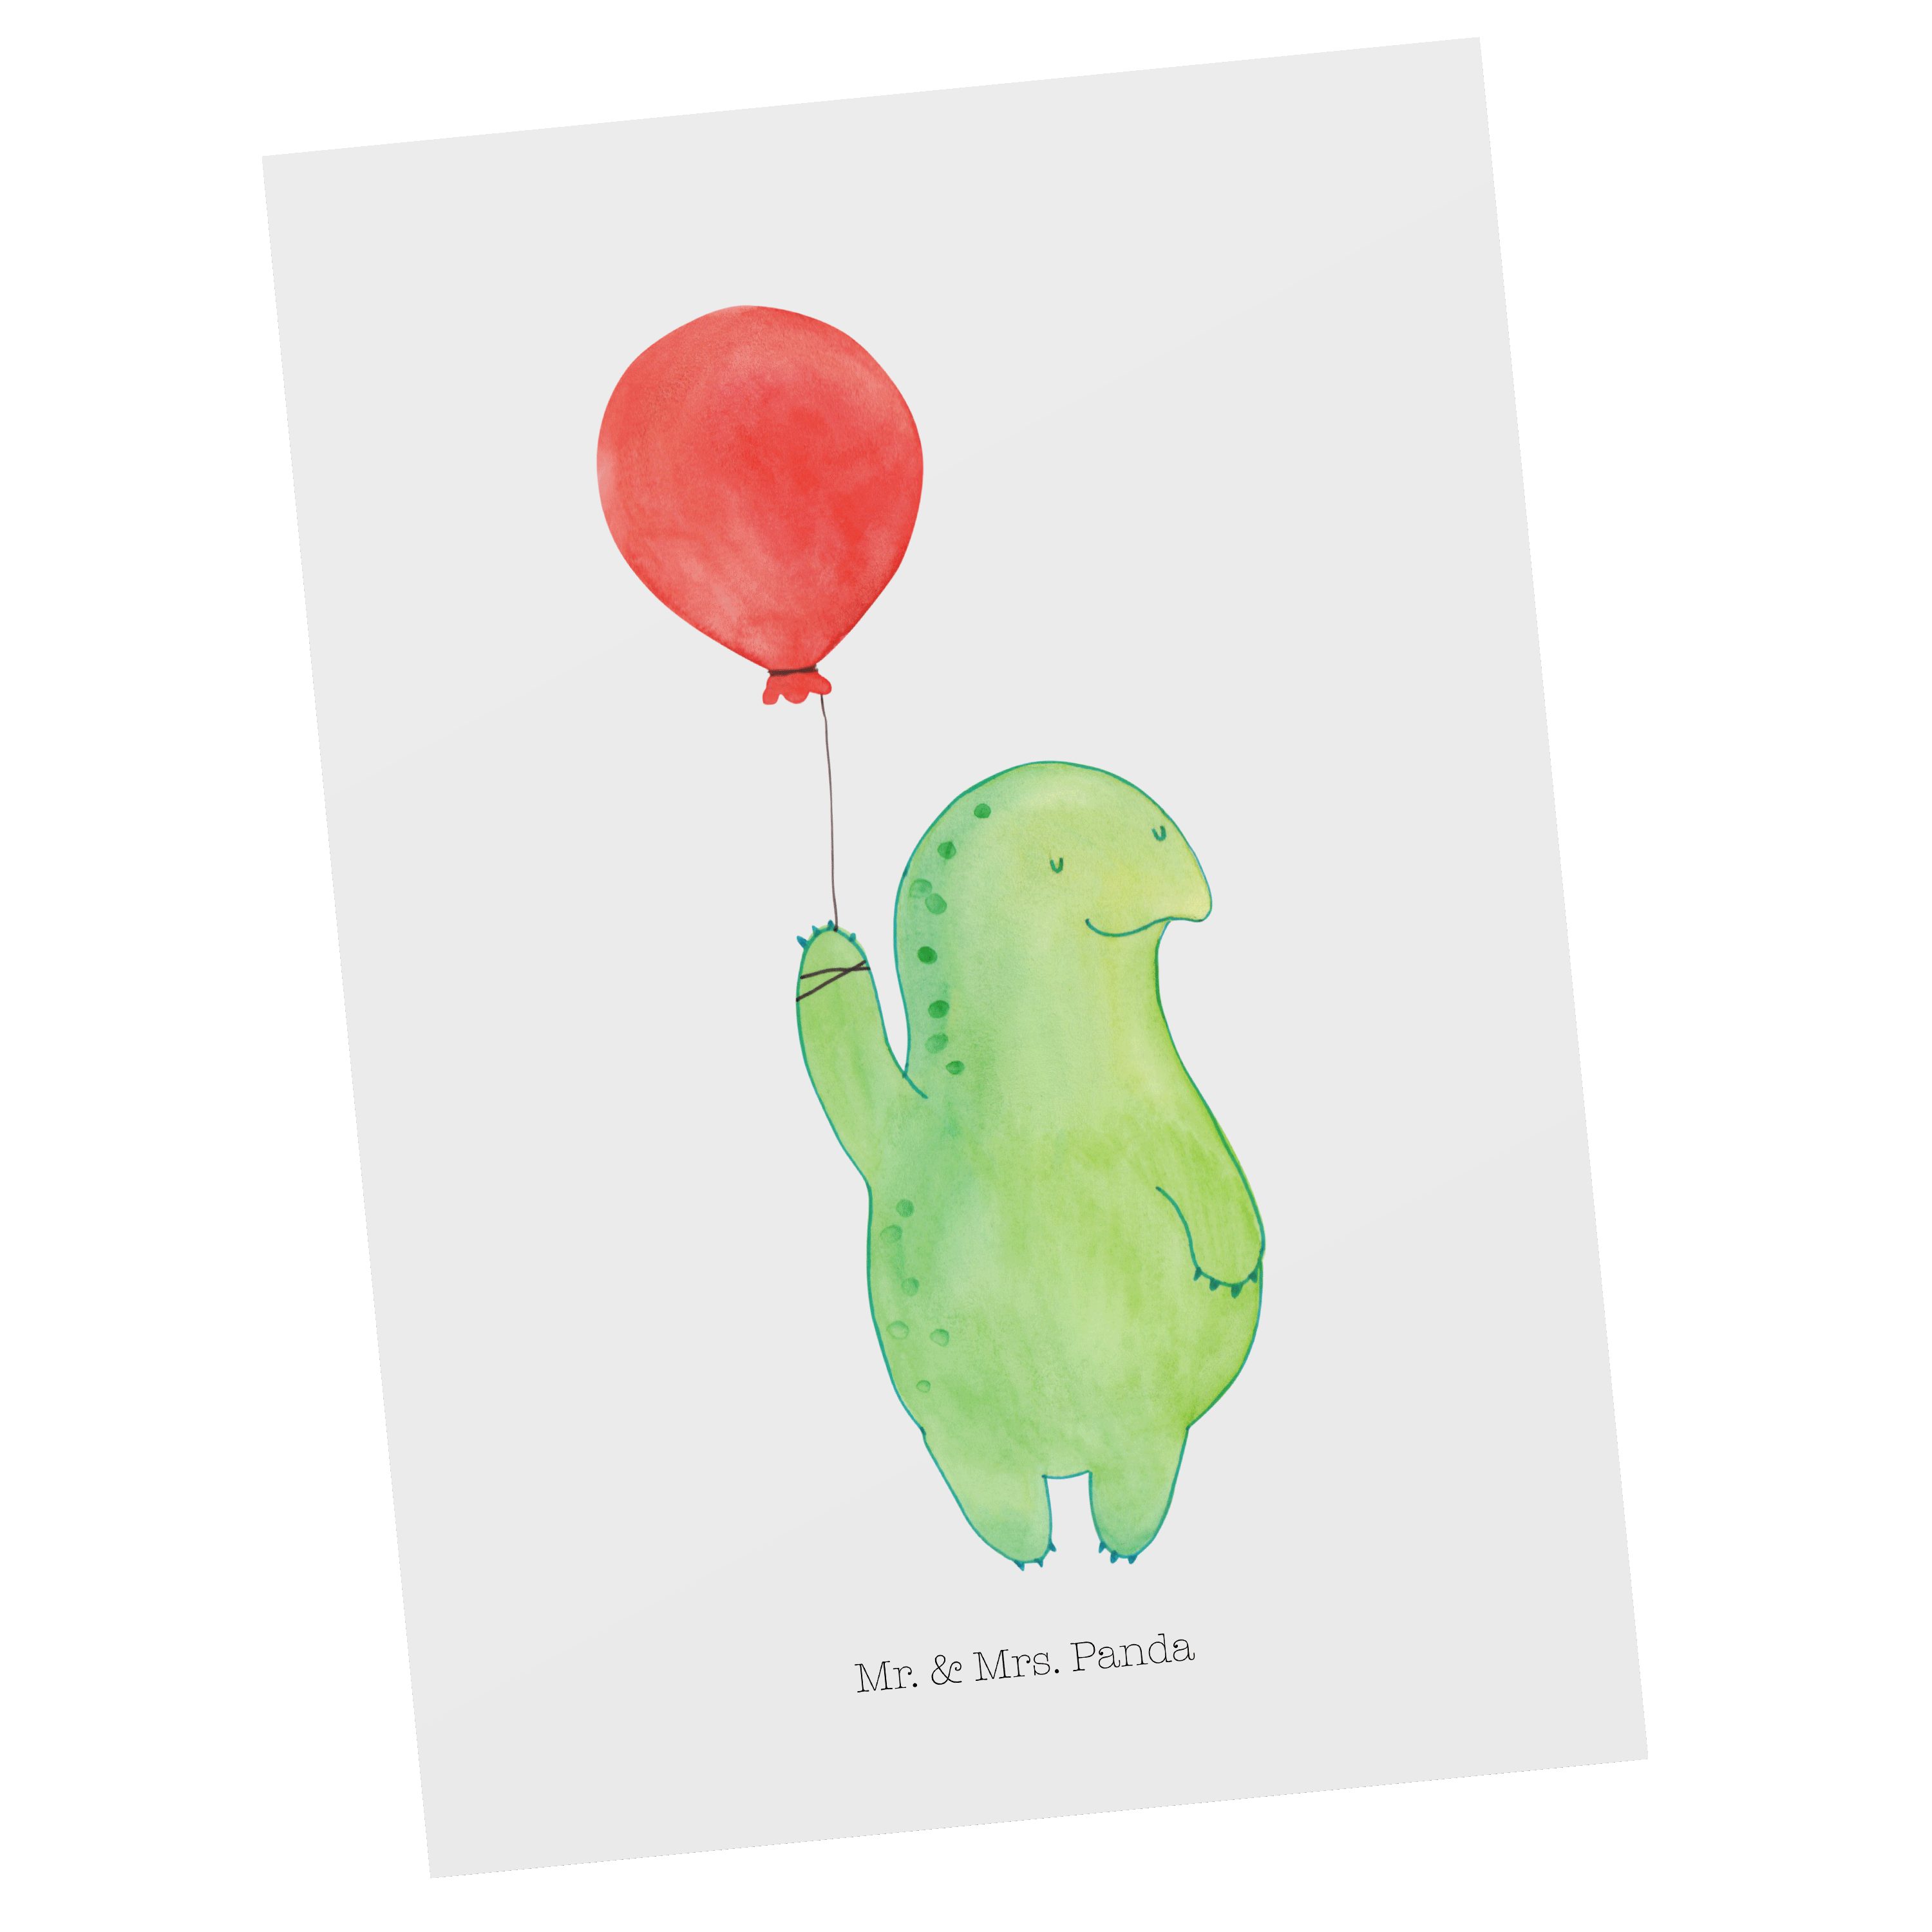 Mr. & Mrs. Panda Postkarte Schildkröte Luftballon - Weiß - Geschenk, Mutausbruch, Einladung, Ges